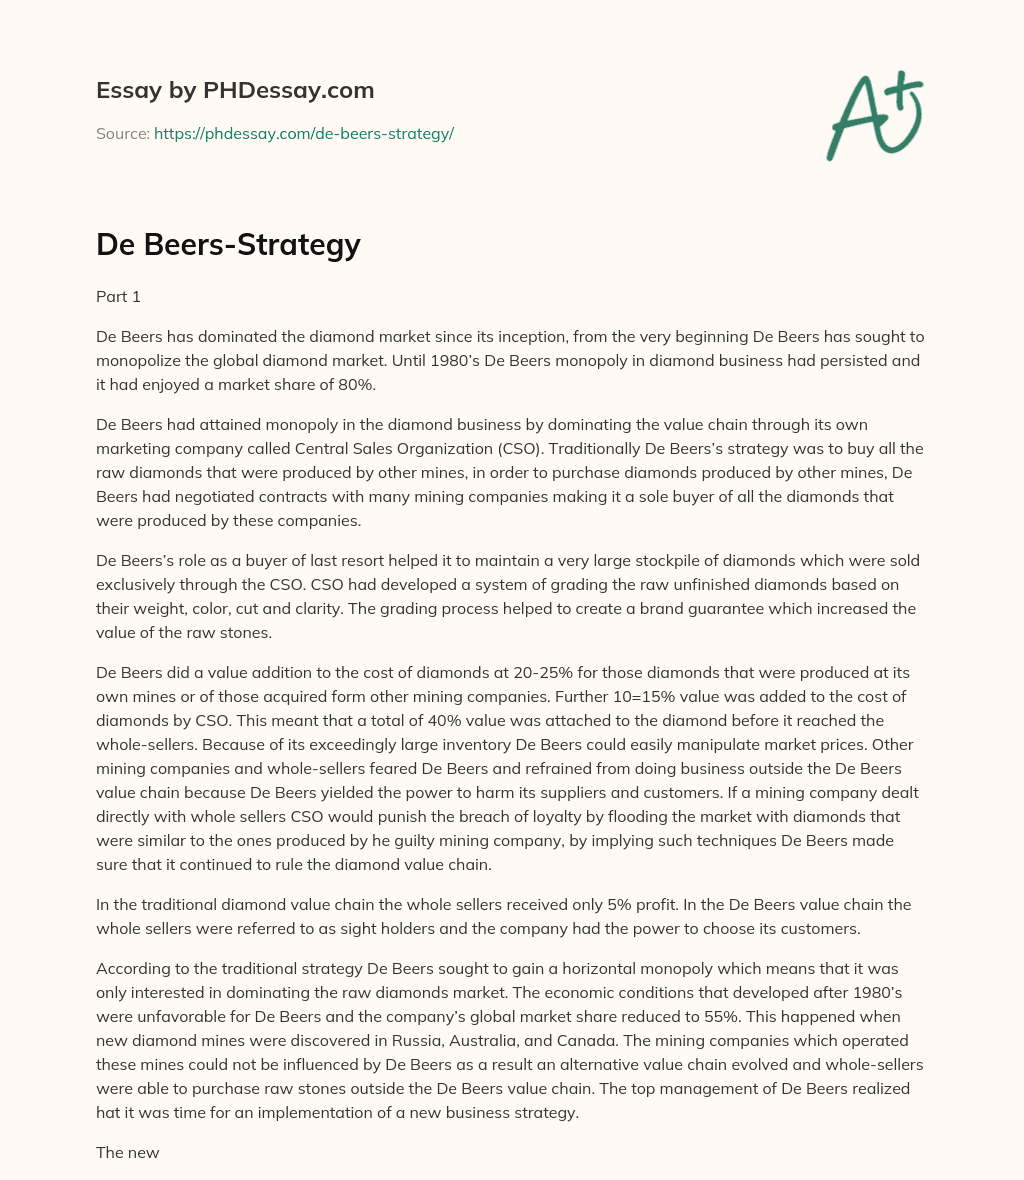 De Beers-Strategy essay